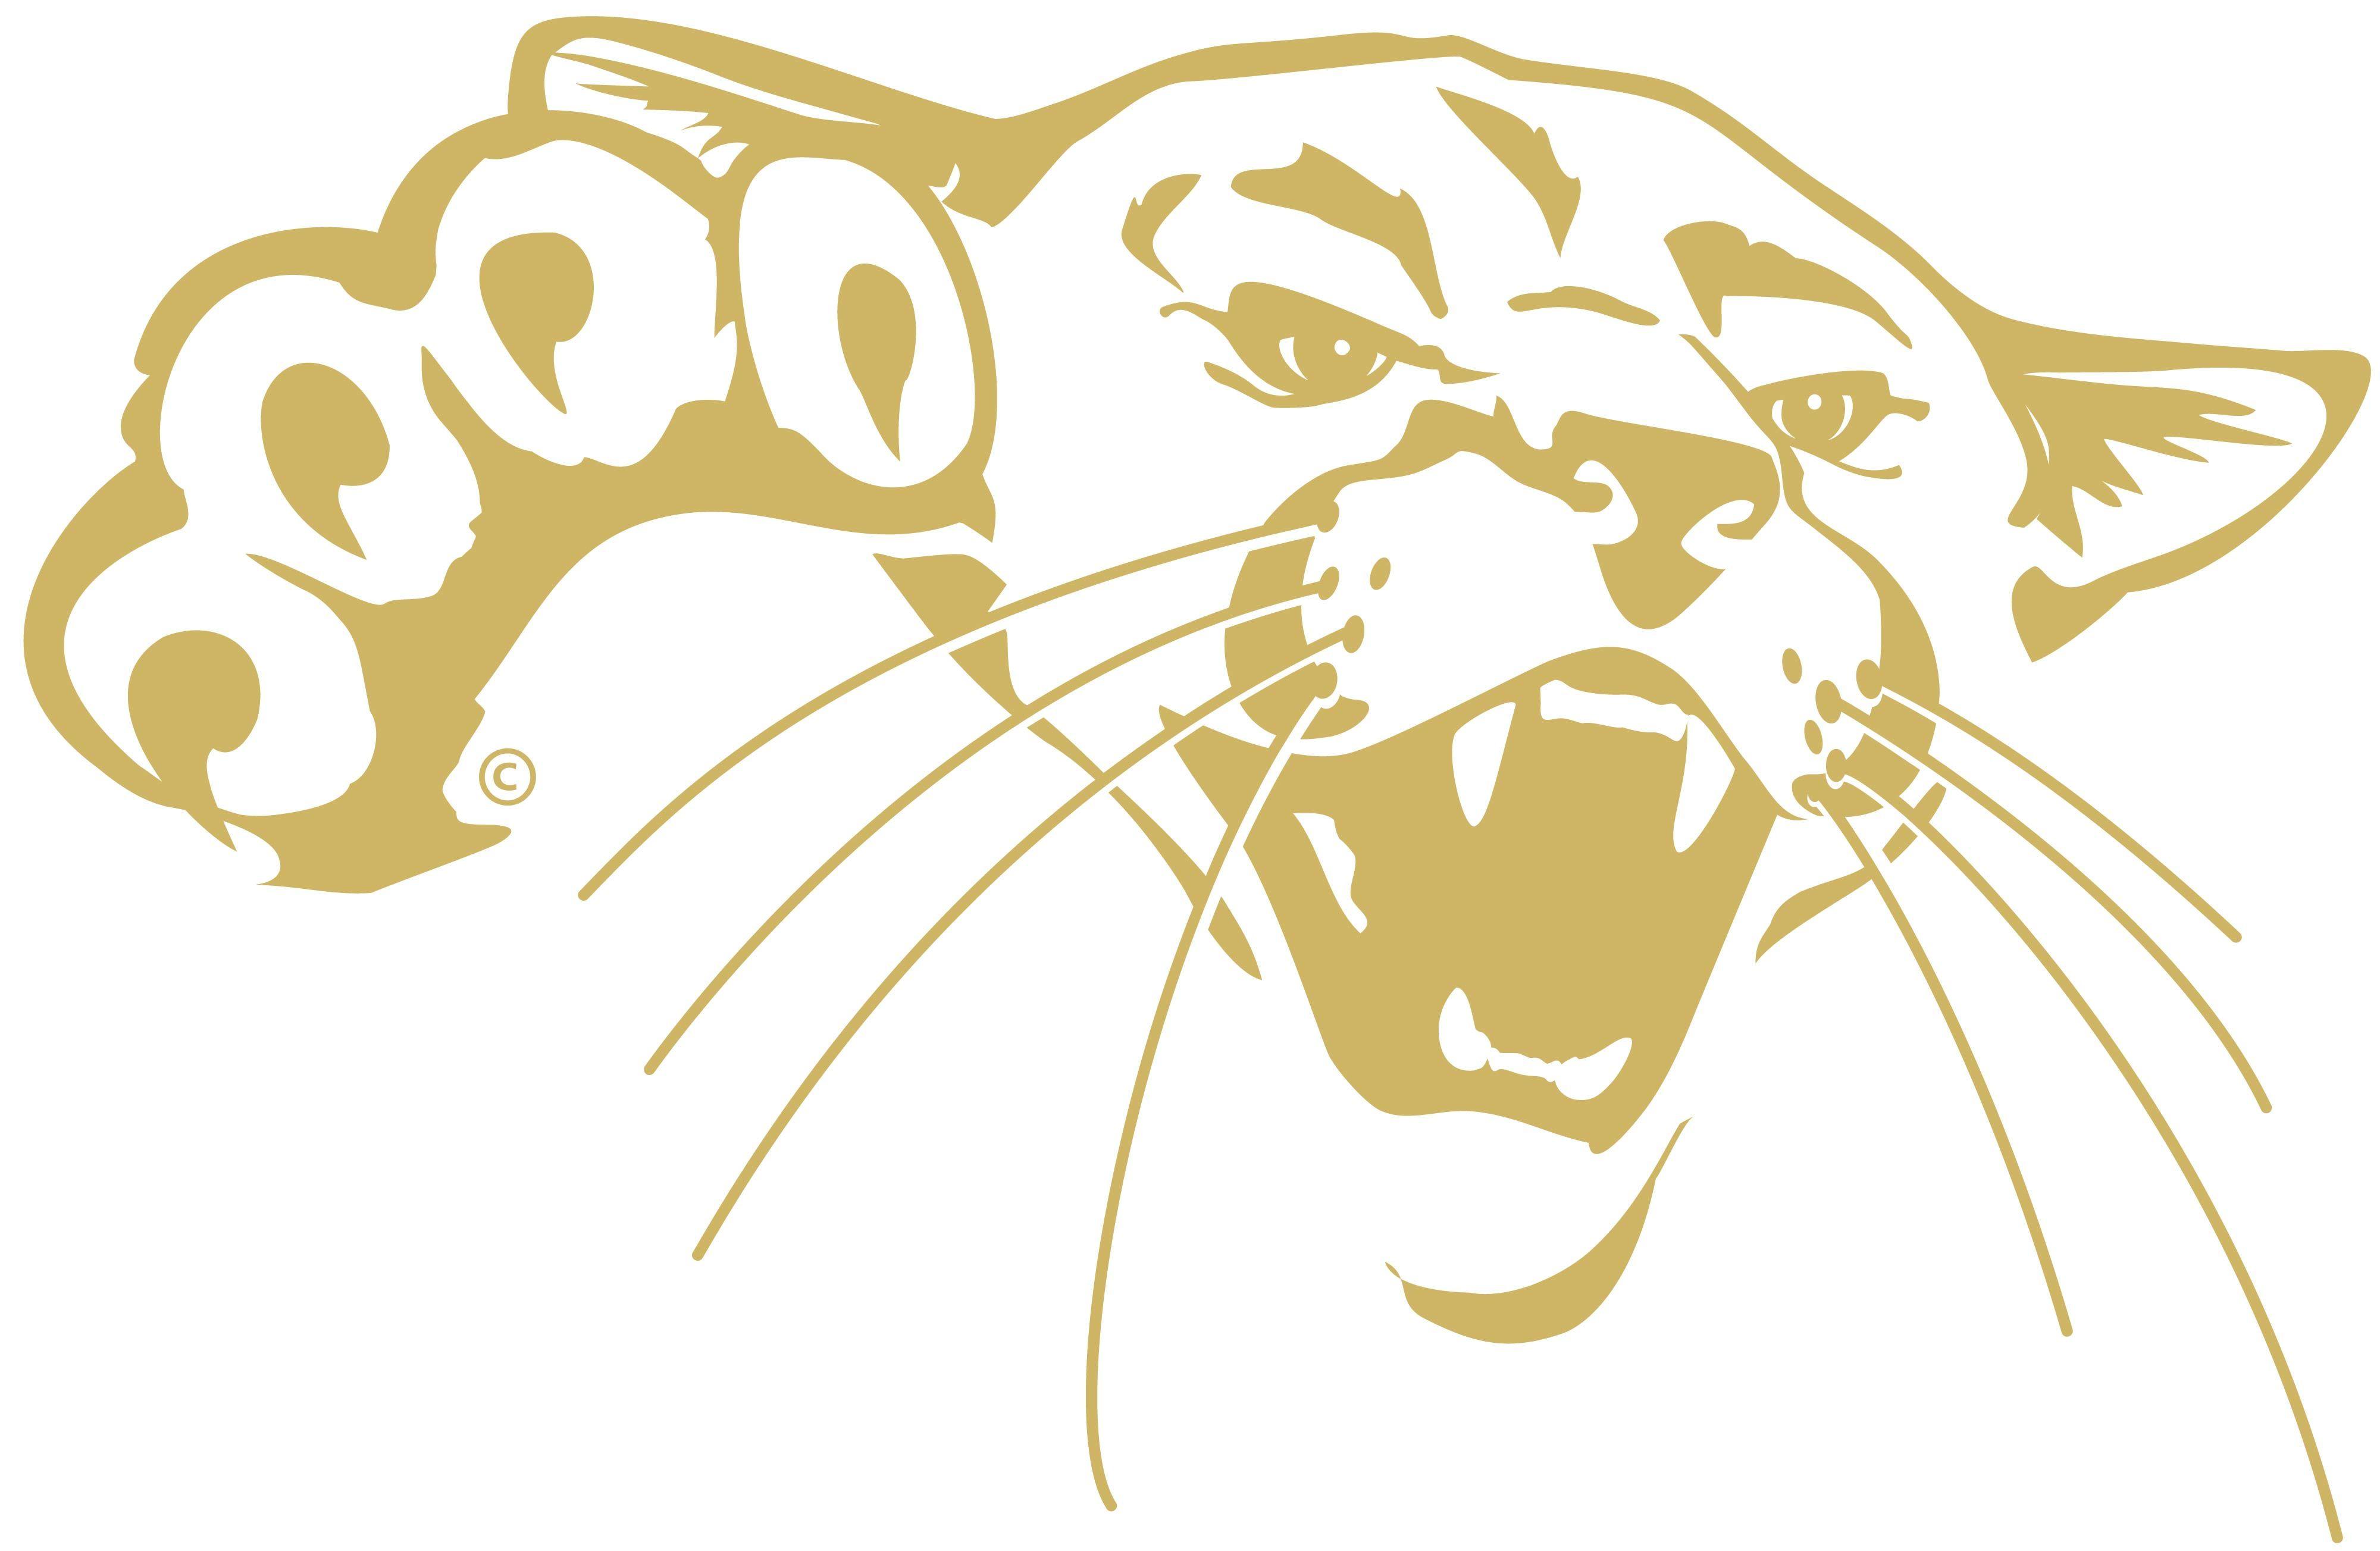 Cougar Logo - Our Logos | Barton Community College